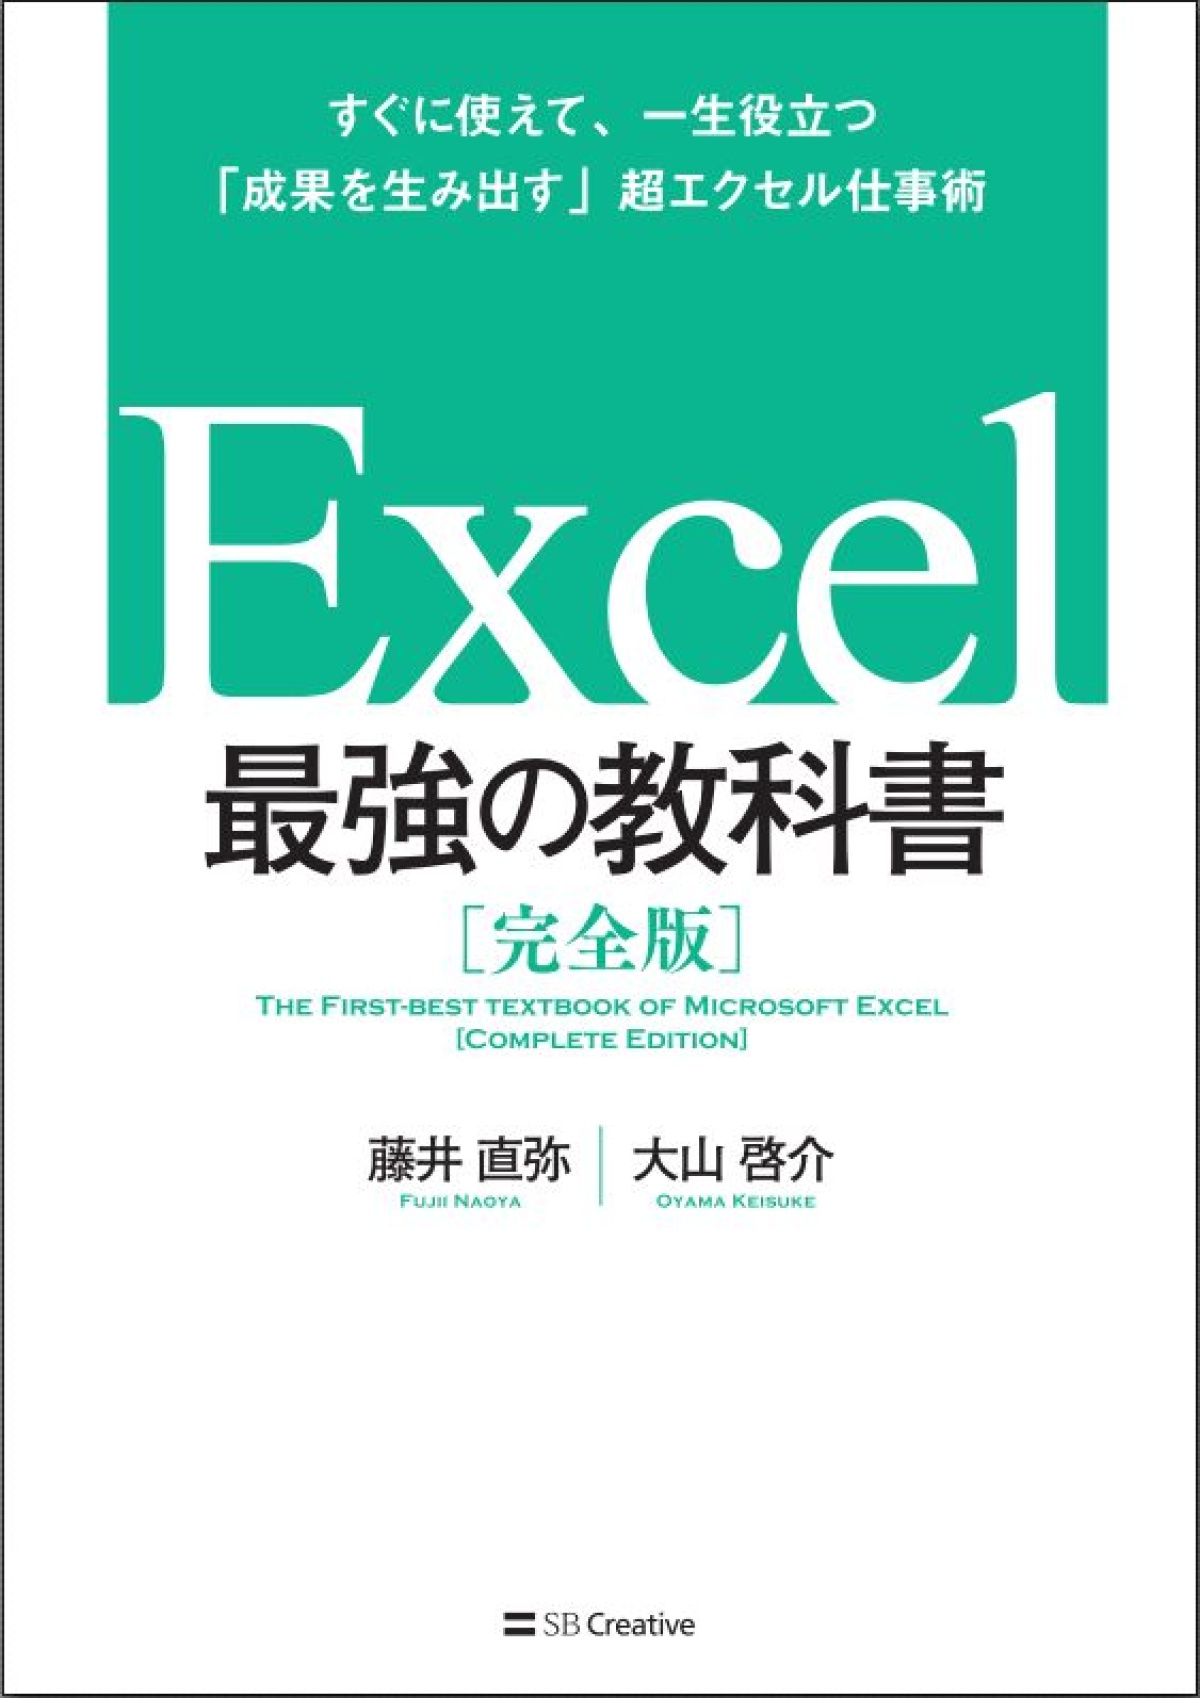 Excel グラフのつくり方の基本を図解 素早くわかりやすい図を作成する方法とは 連載 今日から使えるexcel最強活用術 ビジネス It